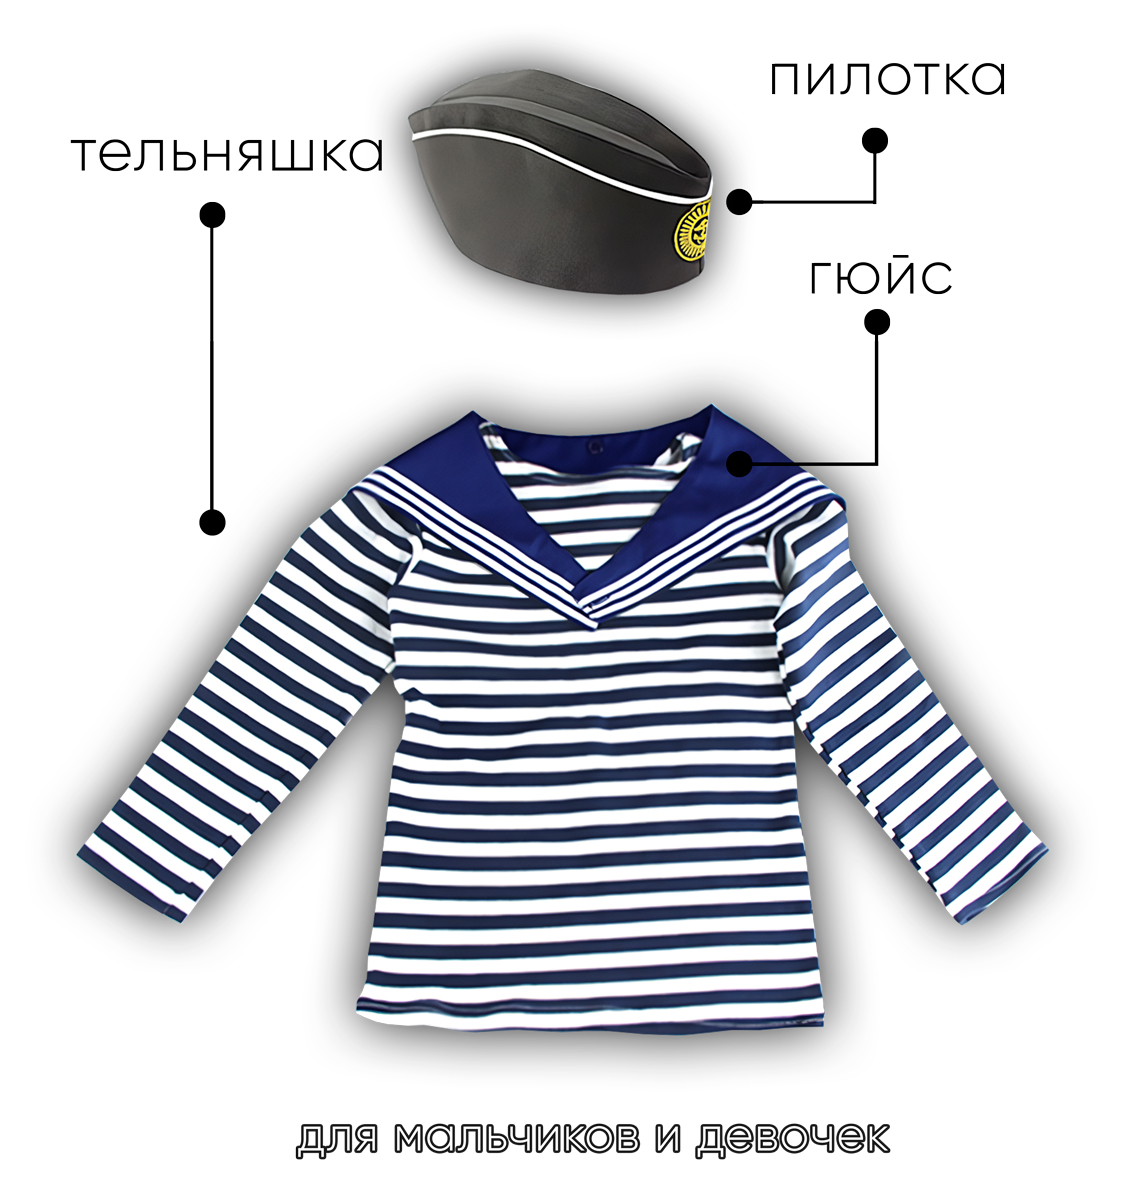 Детский набор матроса для утренника (тельняшка: 30 размер, пилотка детская: 54 размер (на рост 116-122, до 7 лет) и гюйс детский синий)